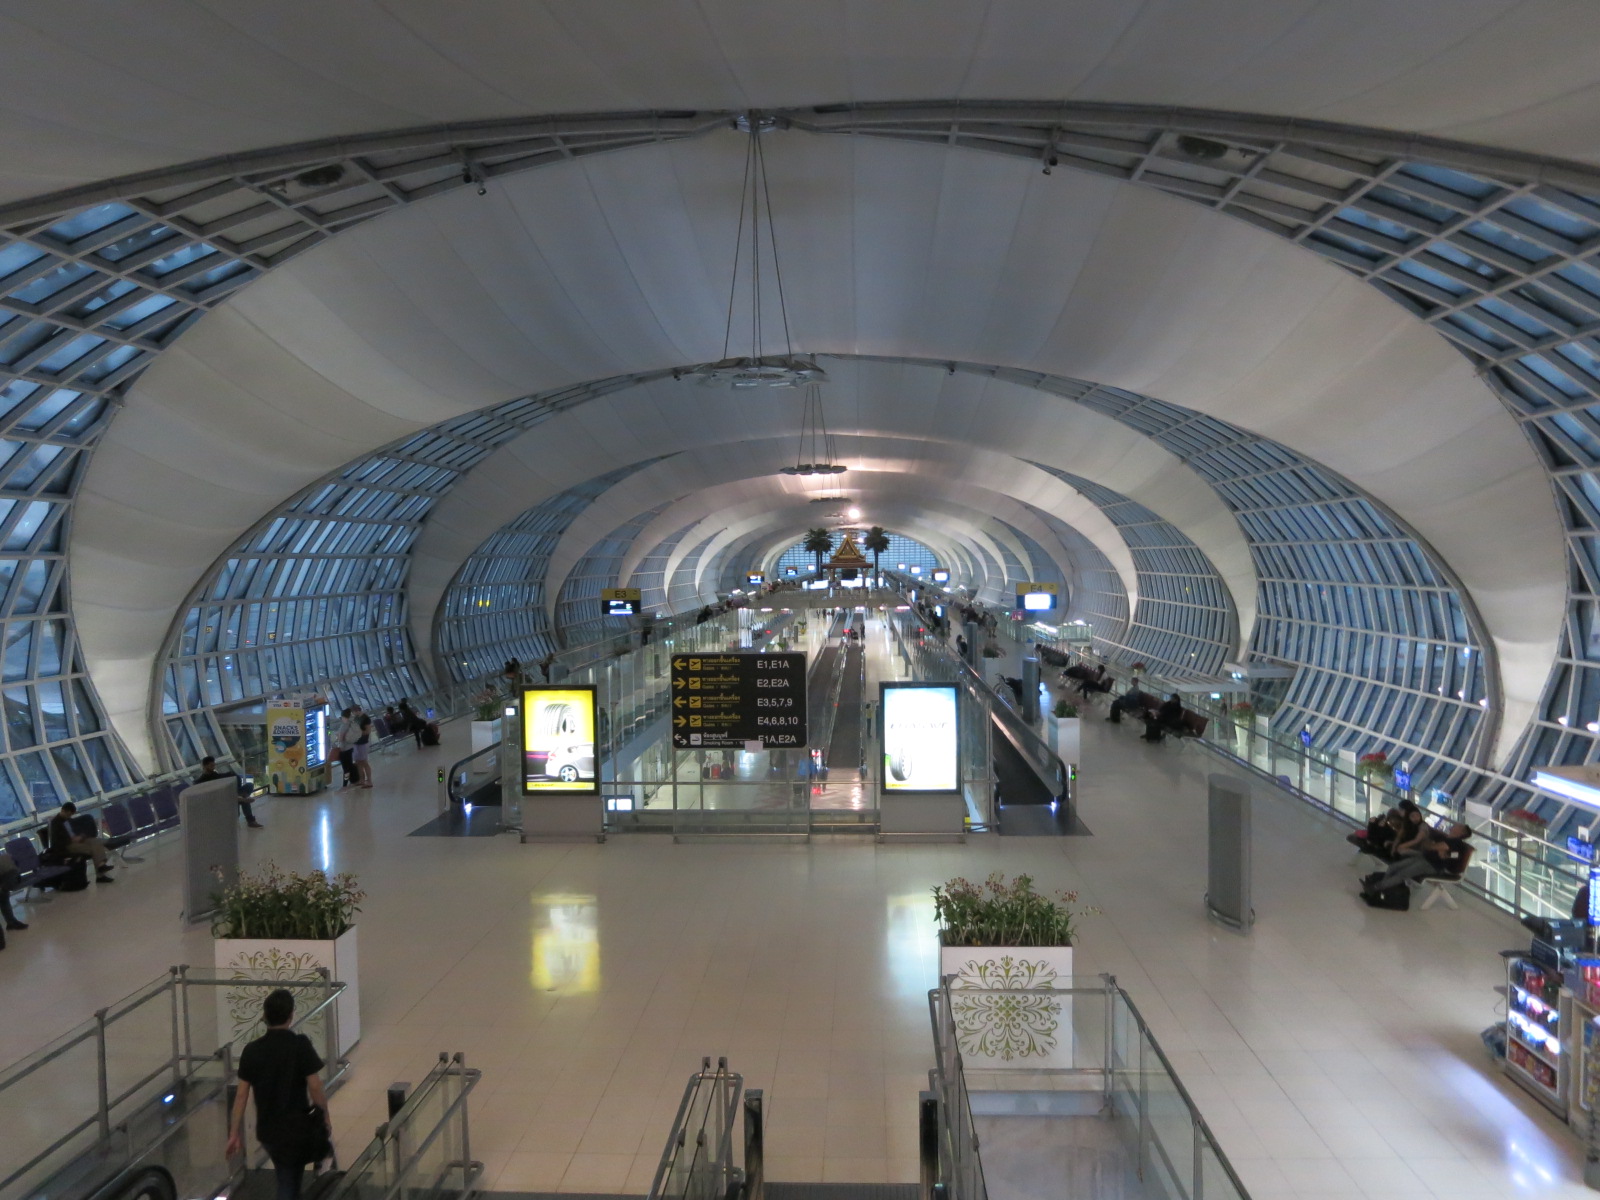 bangkok suvarnabhumi airport